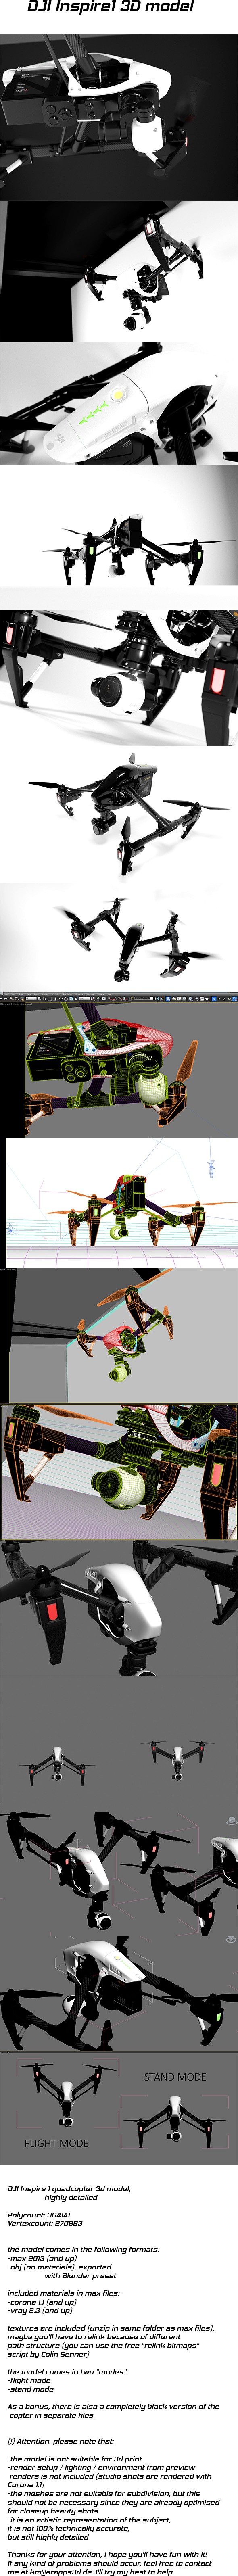 DJI Inspire 1 quadcopter